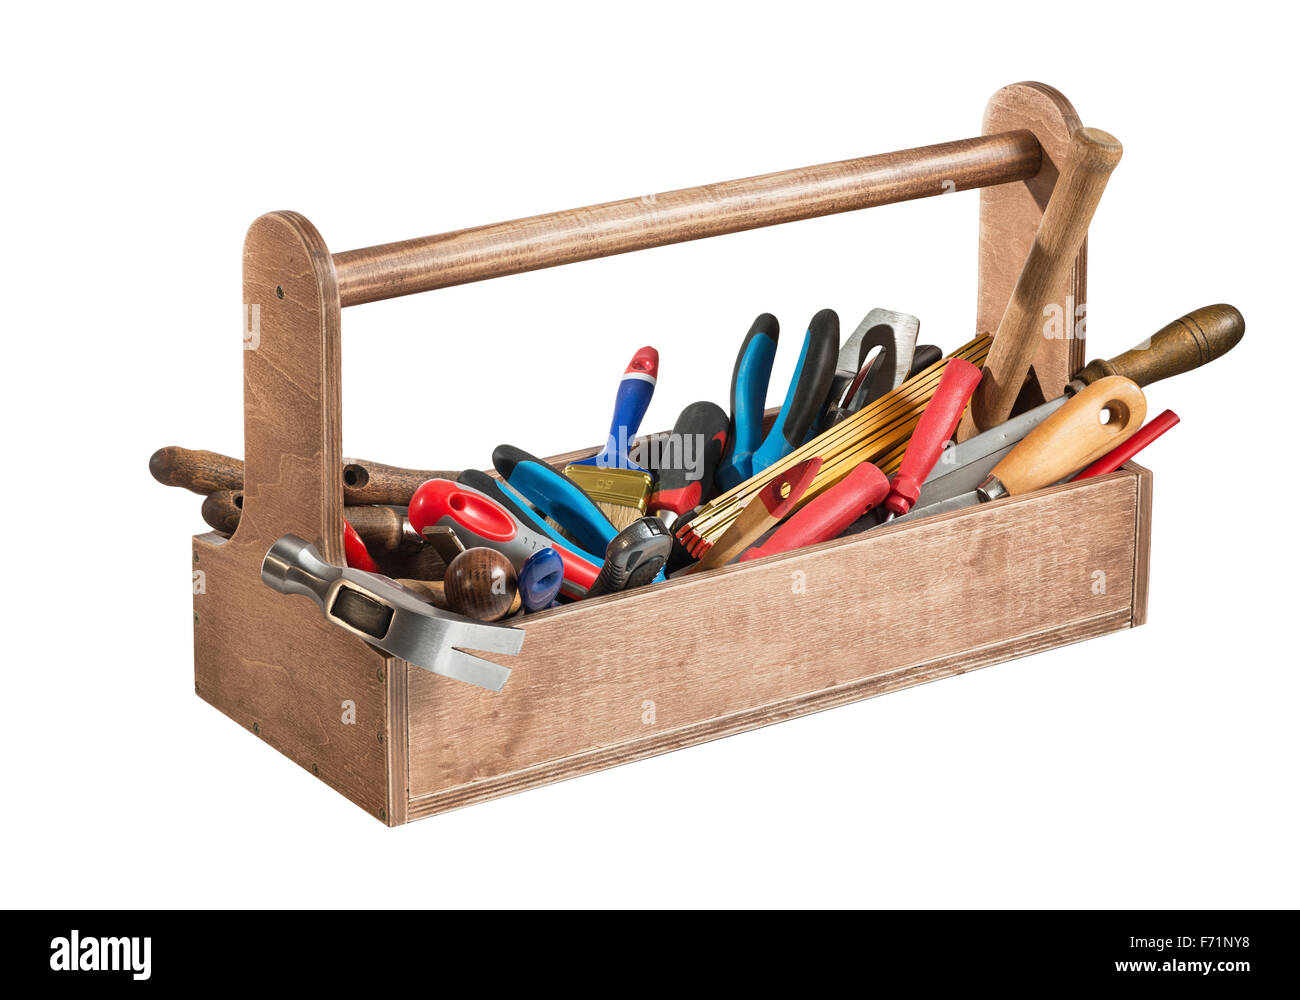 Holz Werkzeugkasten mit Werkzeugen isoliert auf weißem Hintergrund Stockfoto